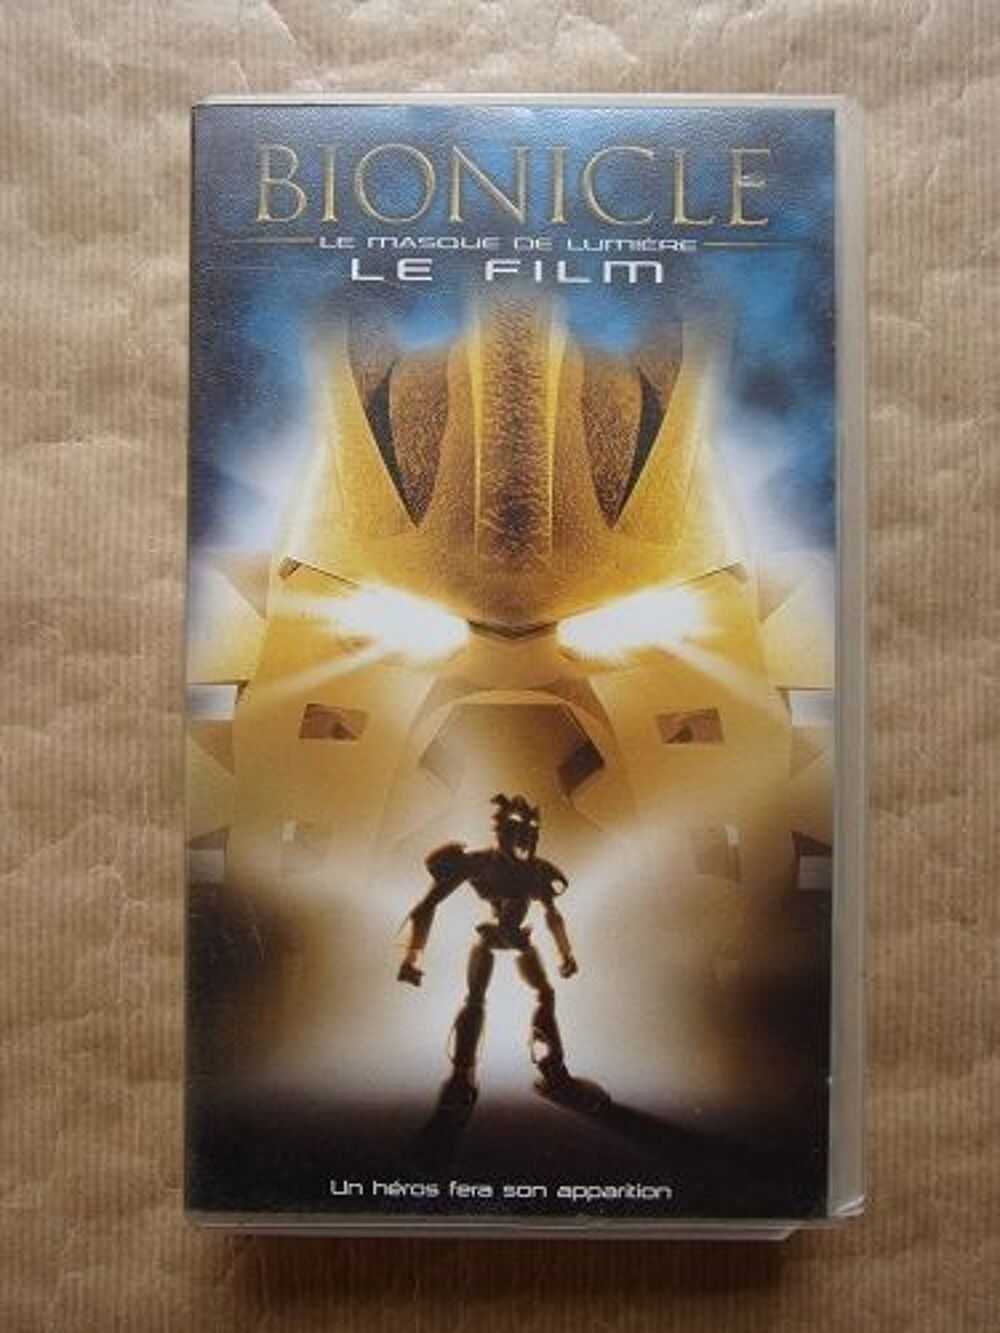 VHS Bionicle DVD et blu-ray